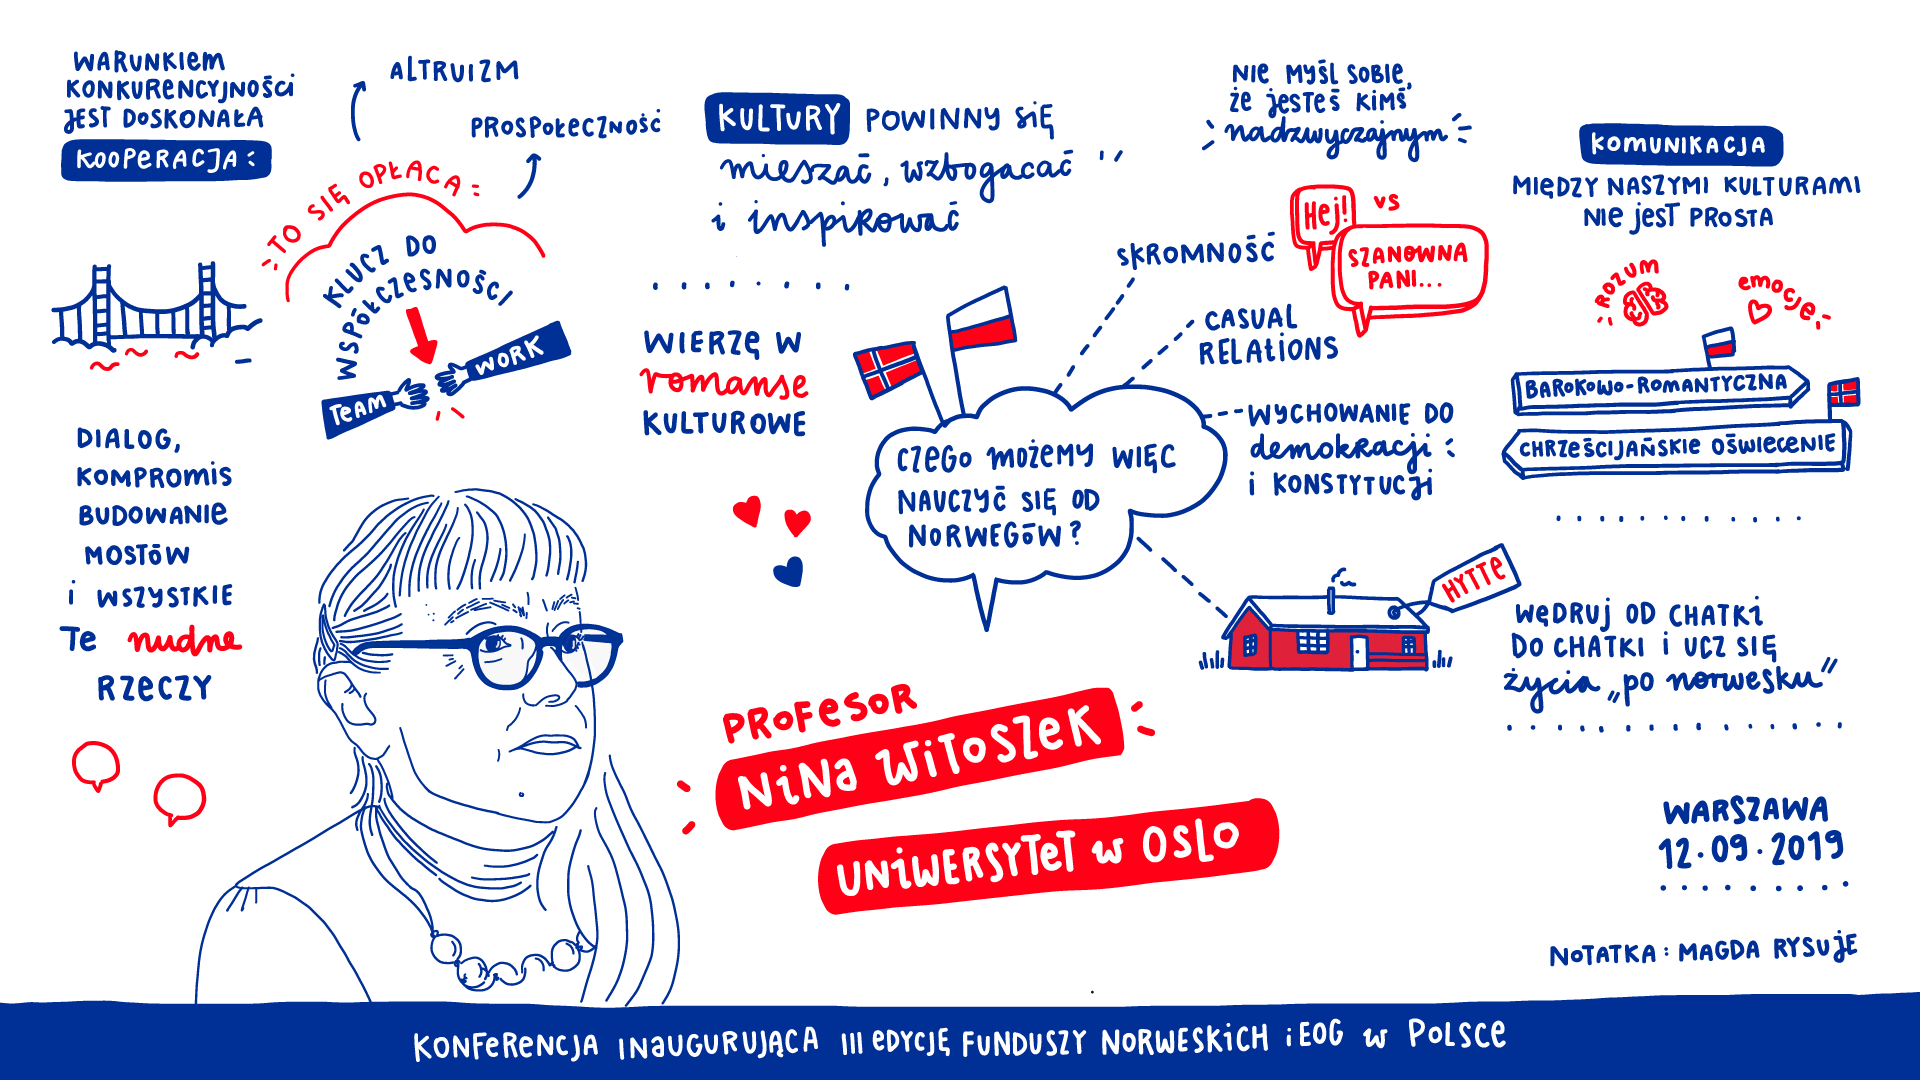 Współpraca bilateralna w warunkach wielokulturowości - graficzny zapis wywiadu z Profesor Nina Witoszek